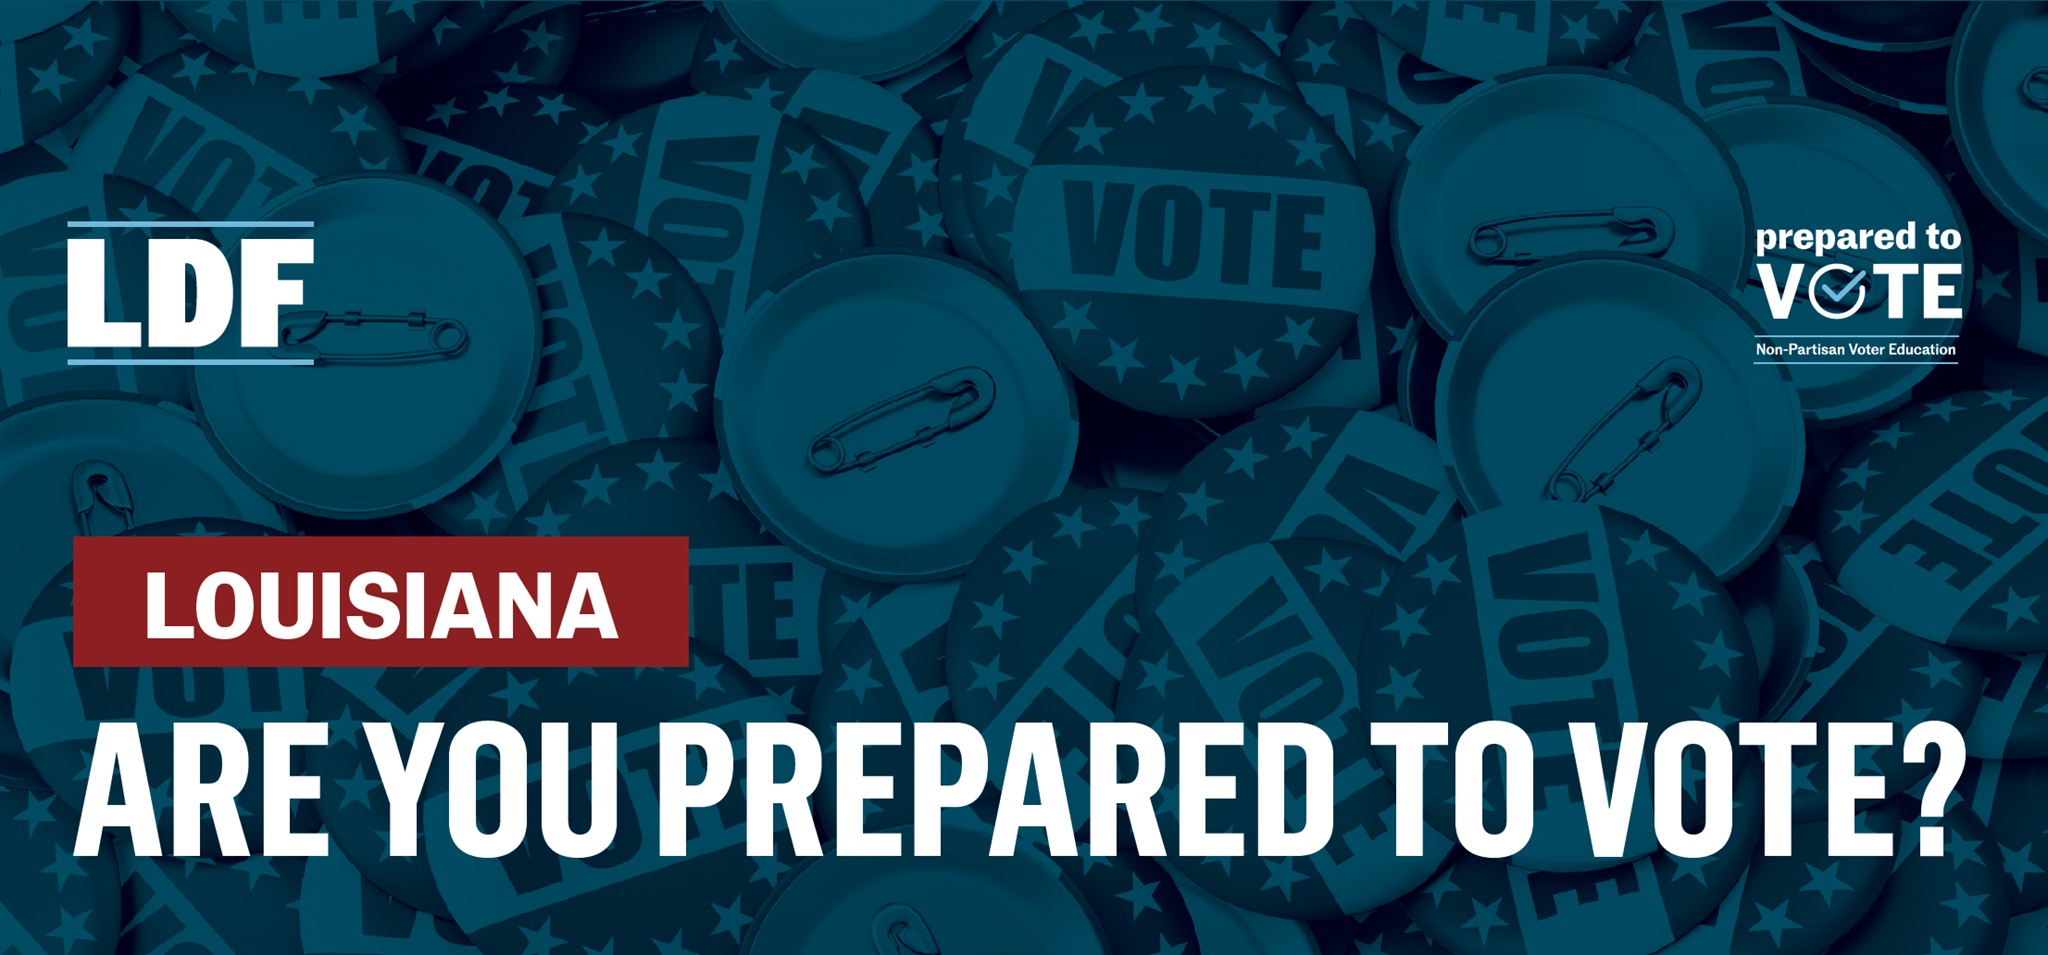 Louisiana: are you prepared to vote?